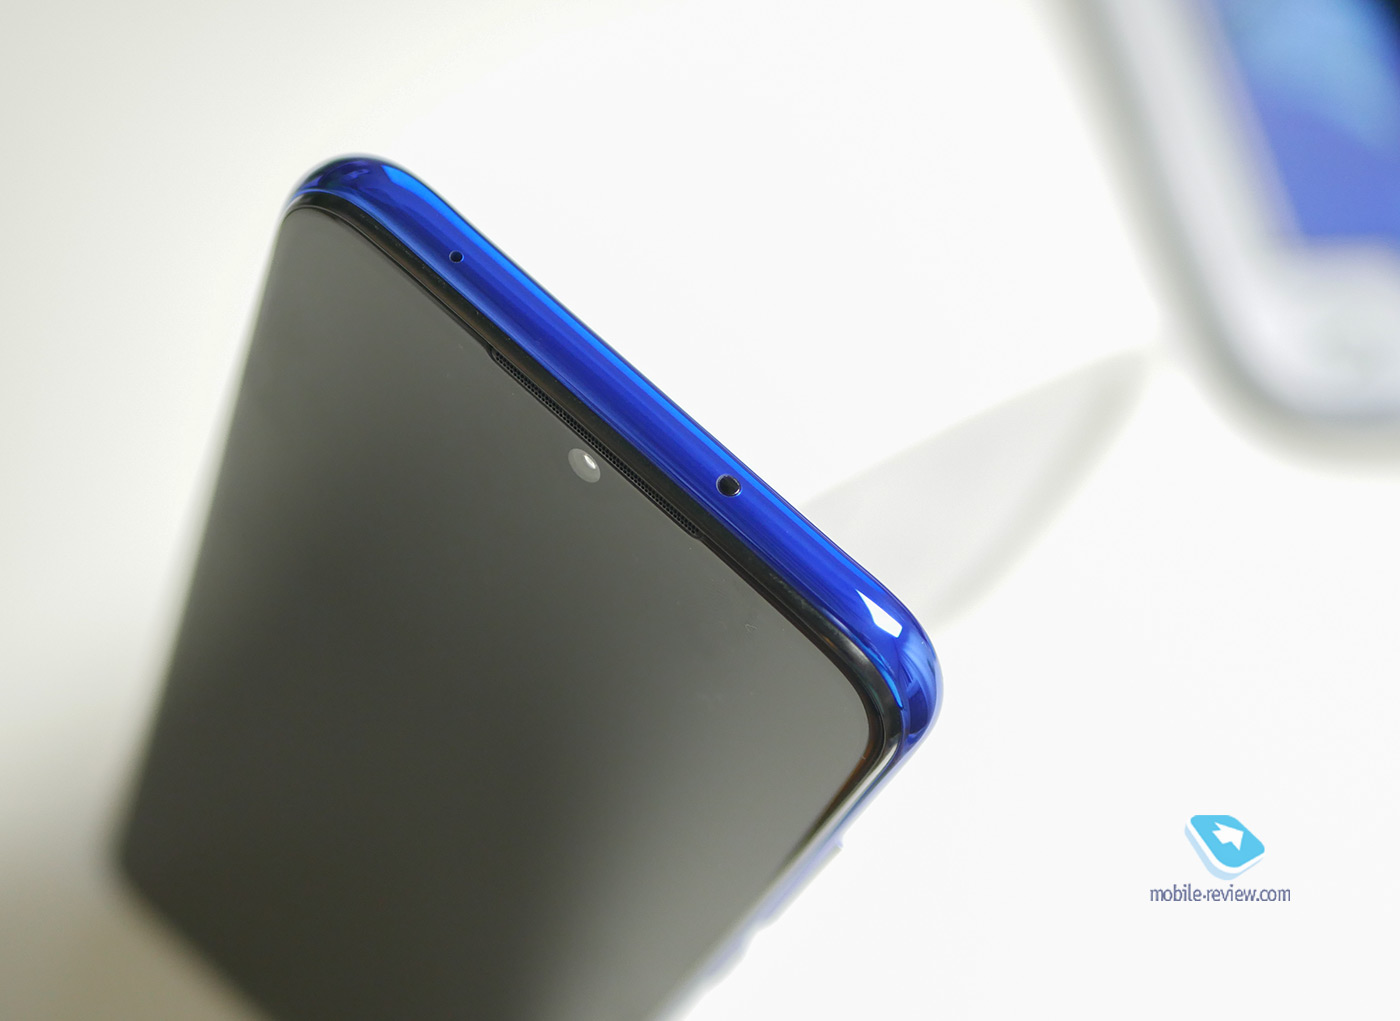 Test du Redmi Note 8T : téléphone avec appareil photo abordable